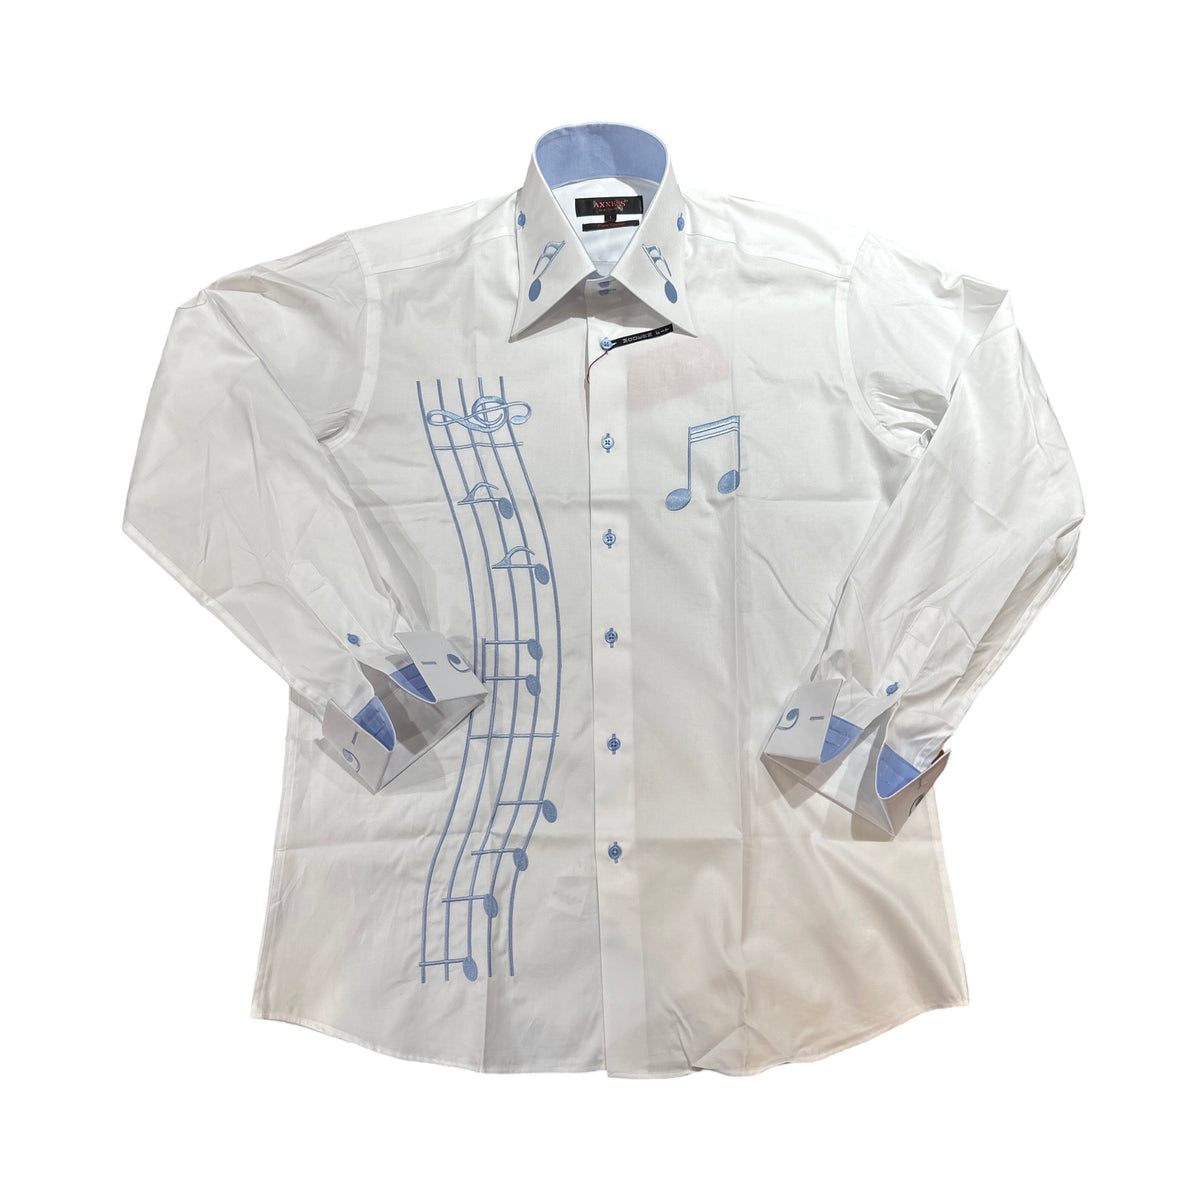 Axxess White & Blue Music Button Up Shirt